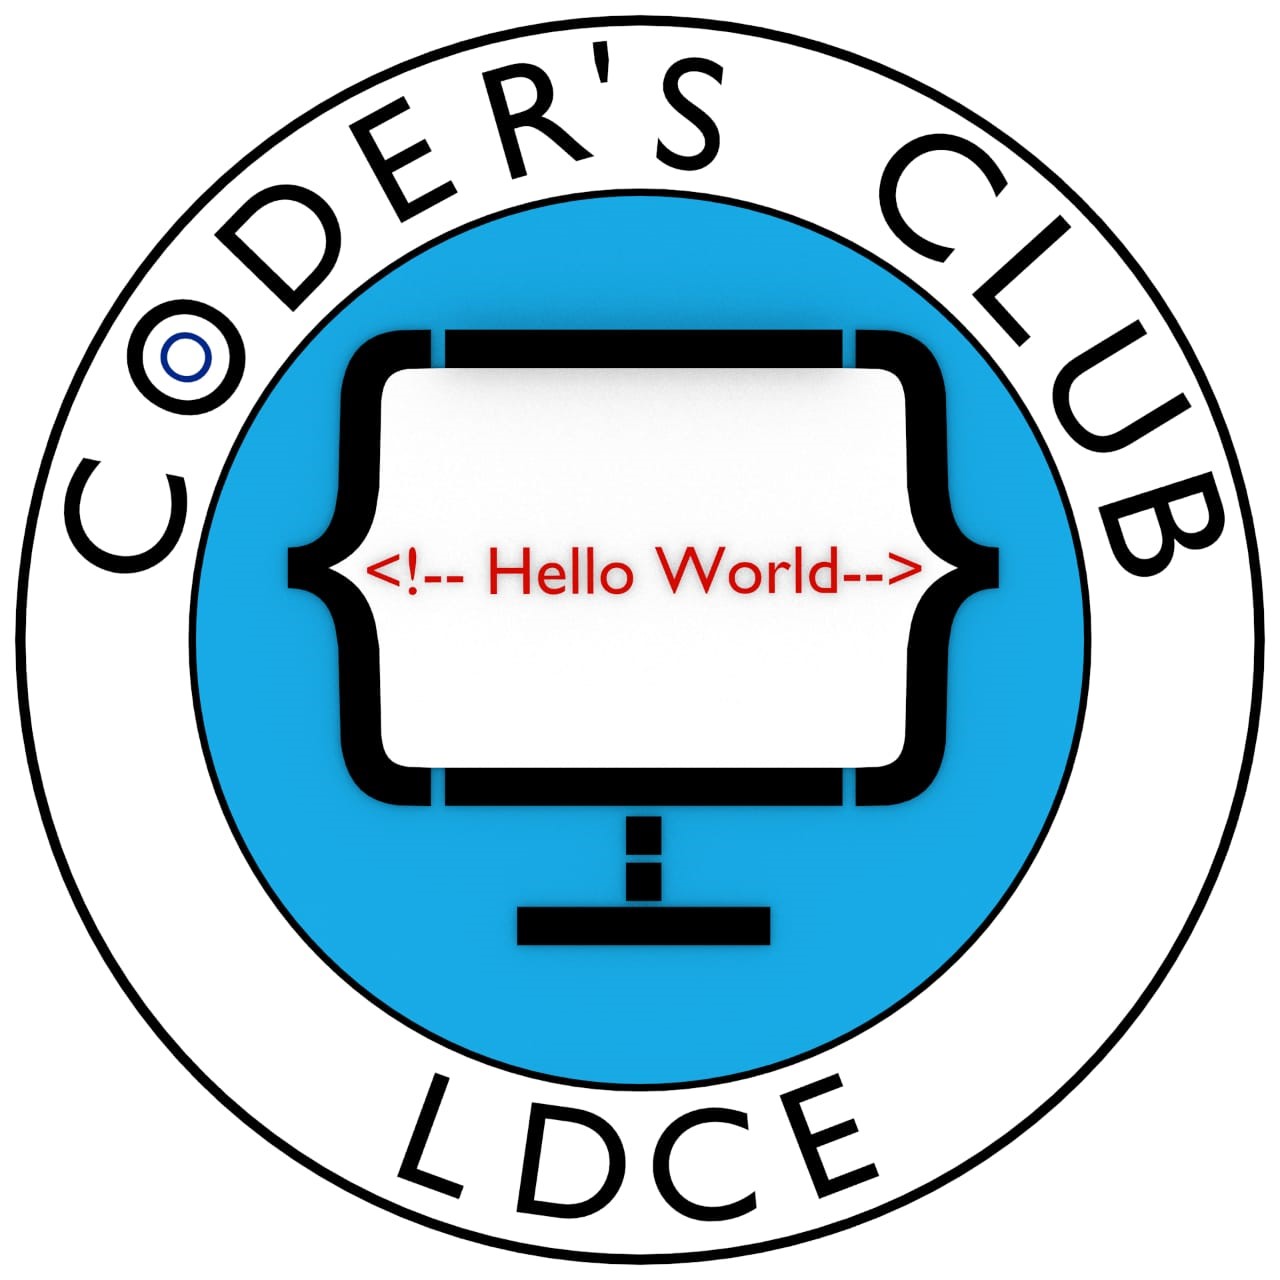 Coders Club Logo